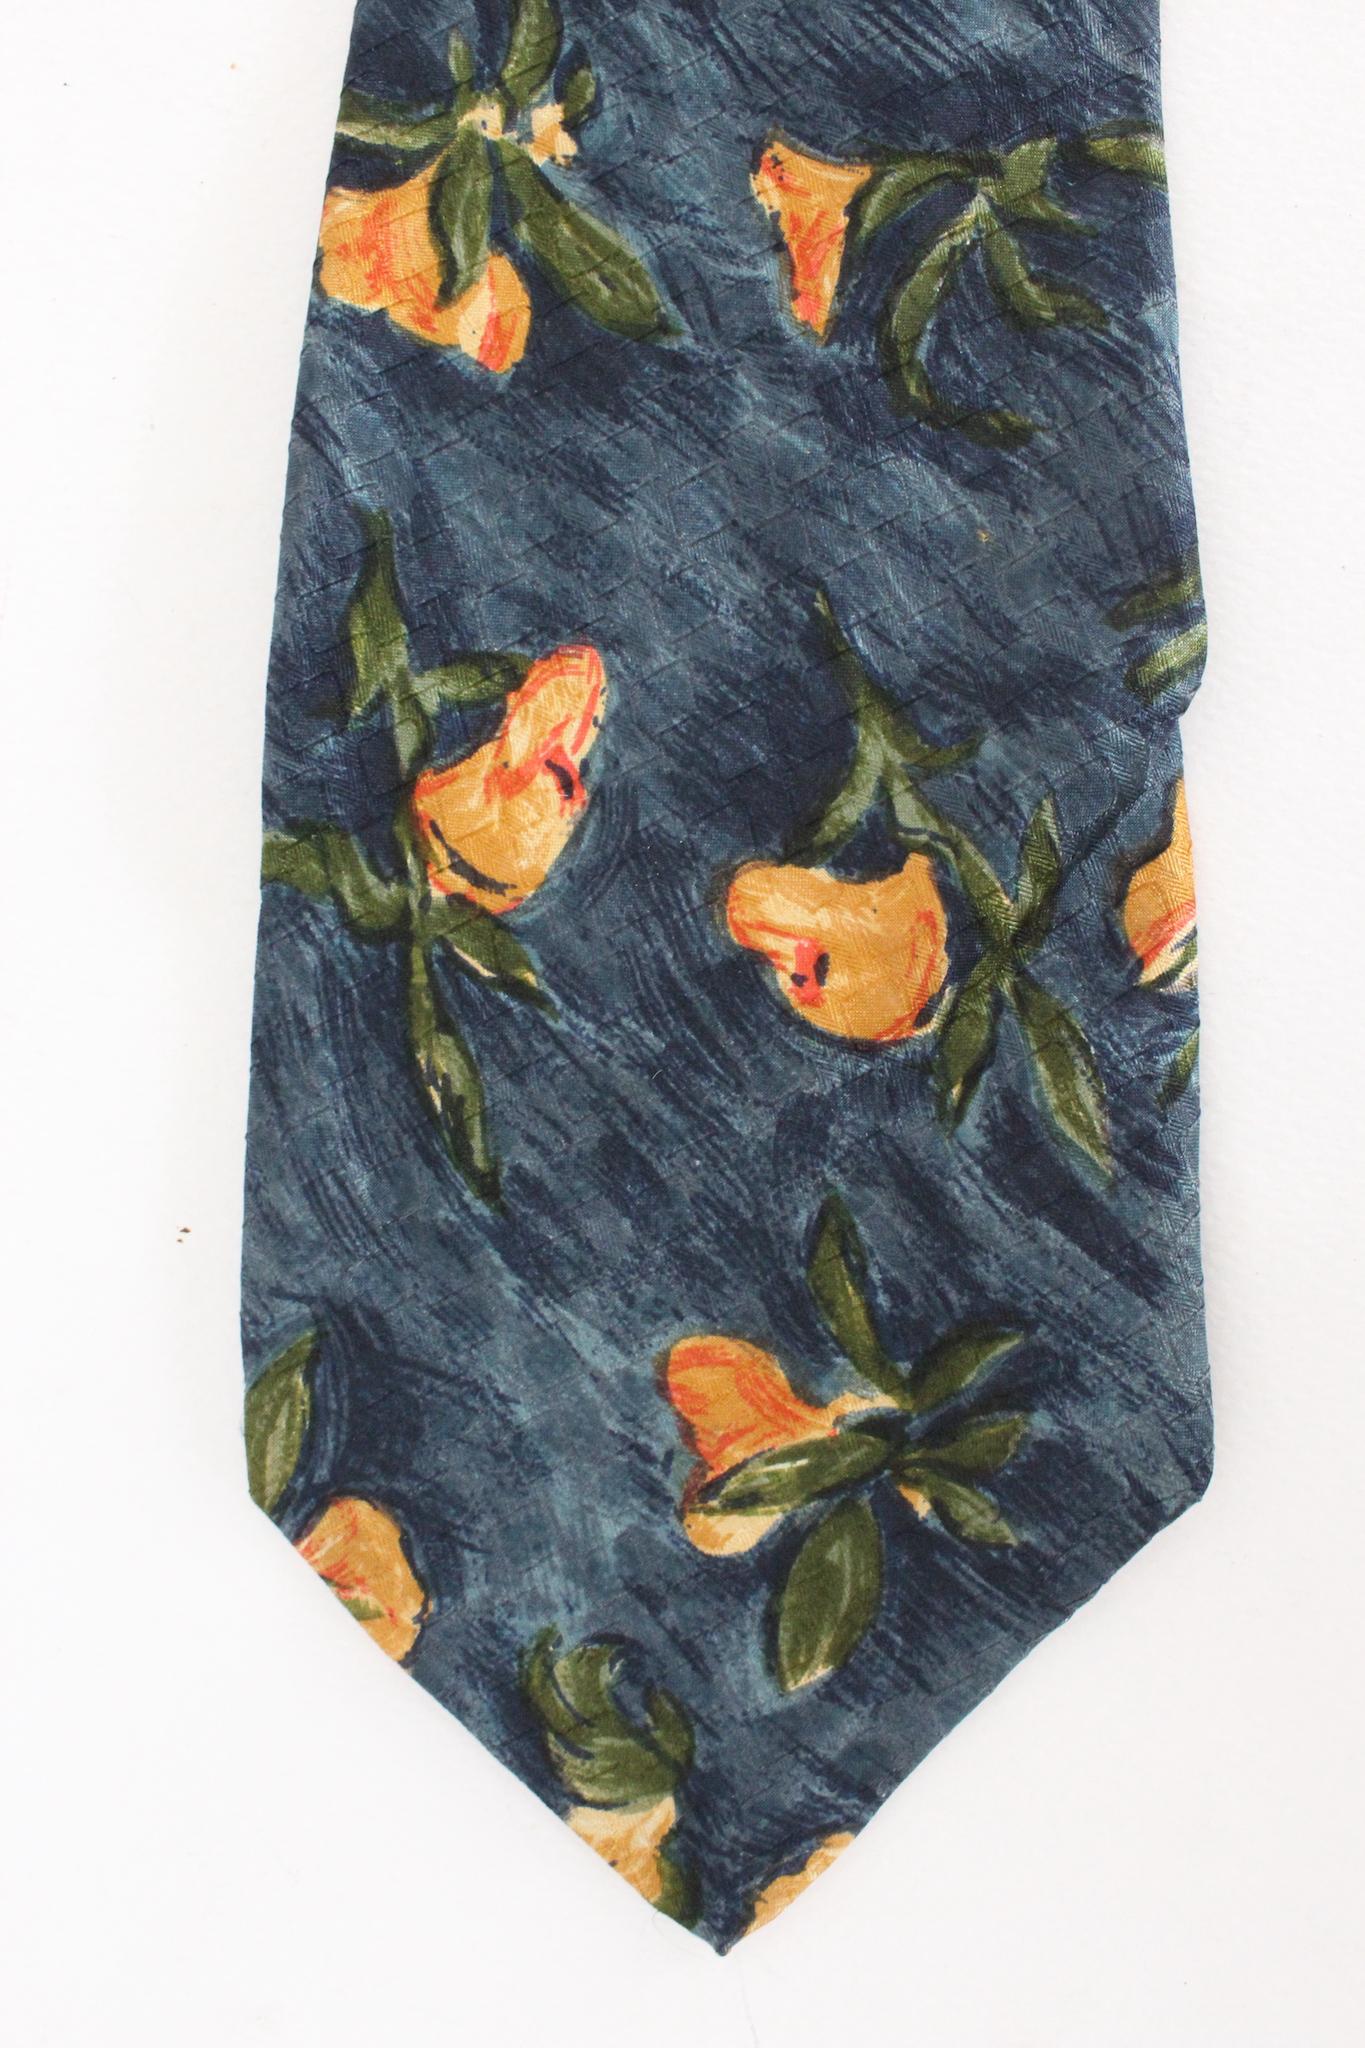 Ungaro vintage 90s floral tie. Blue color with orange floral pattern, 100% silk. Made in France.

Length: 149 cm
Width: 10 cm